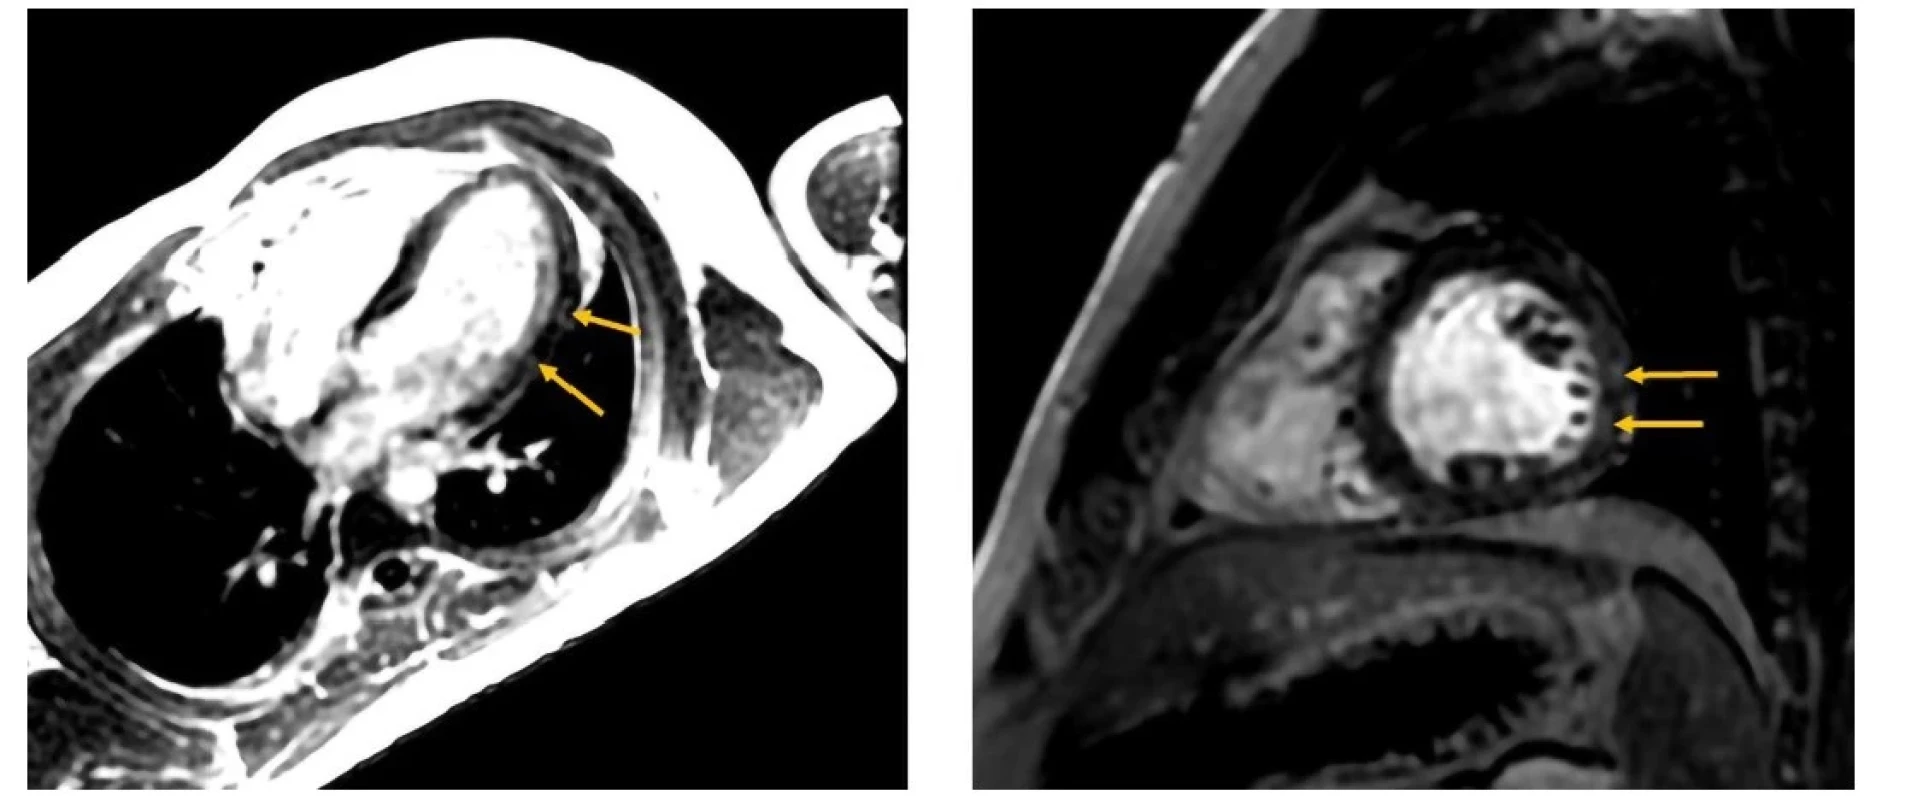 Oneskorená postkontrastná MDE (myocardial delayed enhancement) sekvencia v štvordutinovej projekcii (vľavo) a v projekcii v krátkej osi (vpravo).
Prítomné hyperintenzívne zmeny laterálnej steny – late gadolinium enhancement (šípky). Nemali korelát akútnych zmien – s primeranými hodnotami T1
a T2 máp (Klinika diagnostickej a intervenčnej rádiologie LF SZU a NÚSCH, a. s. – pracovisko magnetickej rezonancie; 30.09.2021)